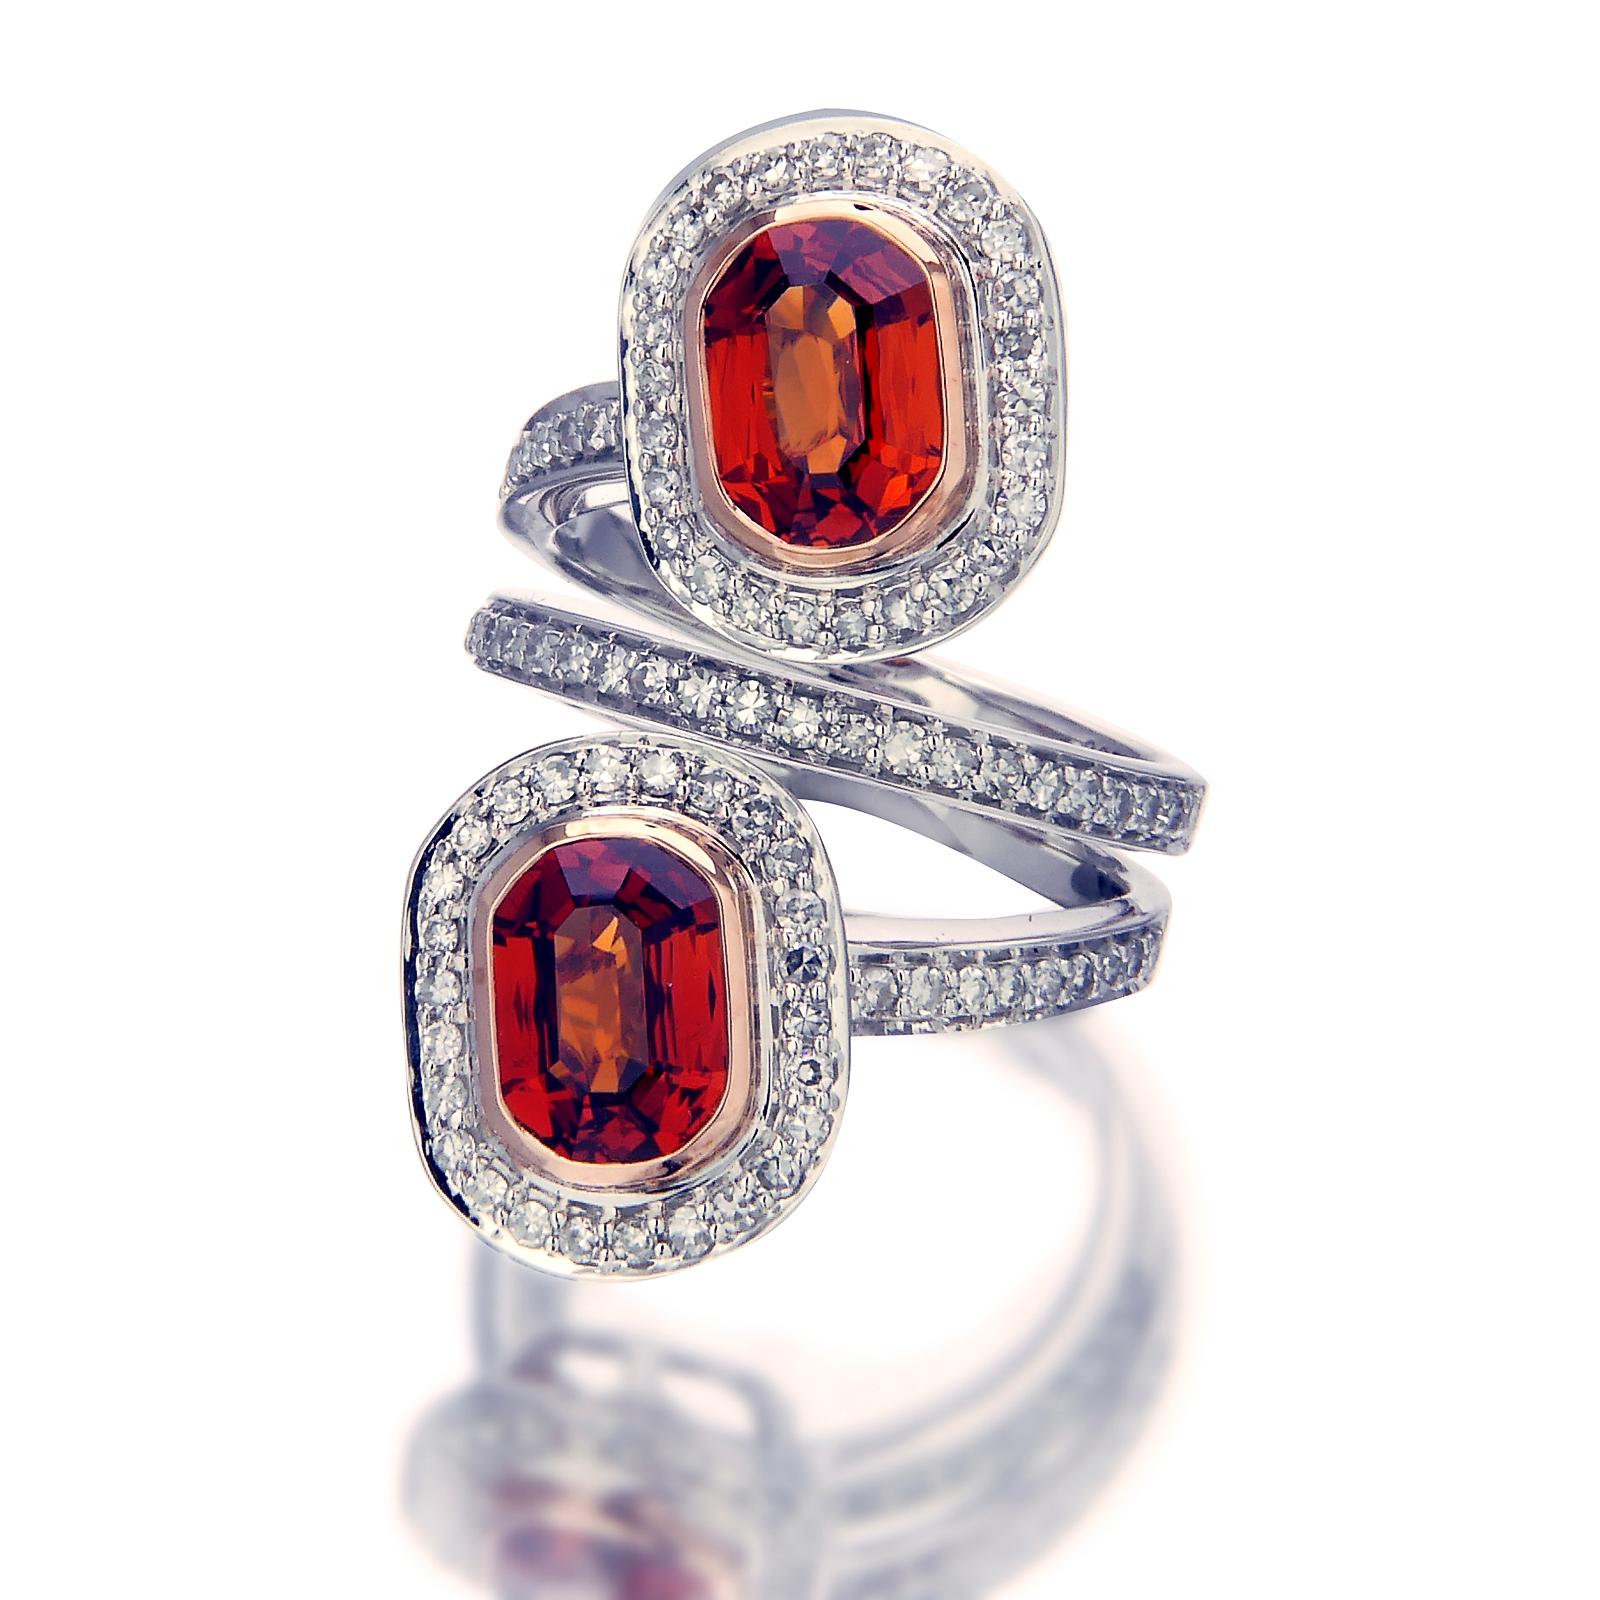 Zwei rötlich-orangefarbene Spessartit-Granate von insgesamt 4,57 Karat, die auf Sockeln befestigt sind, verleihen diesem Ring ein feuriges Strahlen. Die Edelsteine werden von einer Reihe von 0,81-karätigem Diamantpavé umrahmt, die sich durch die